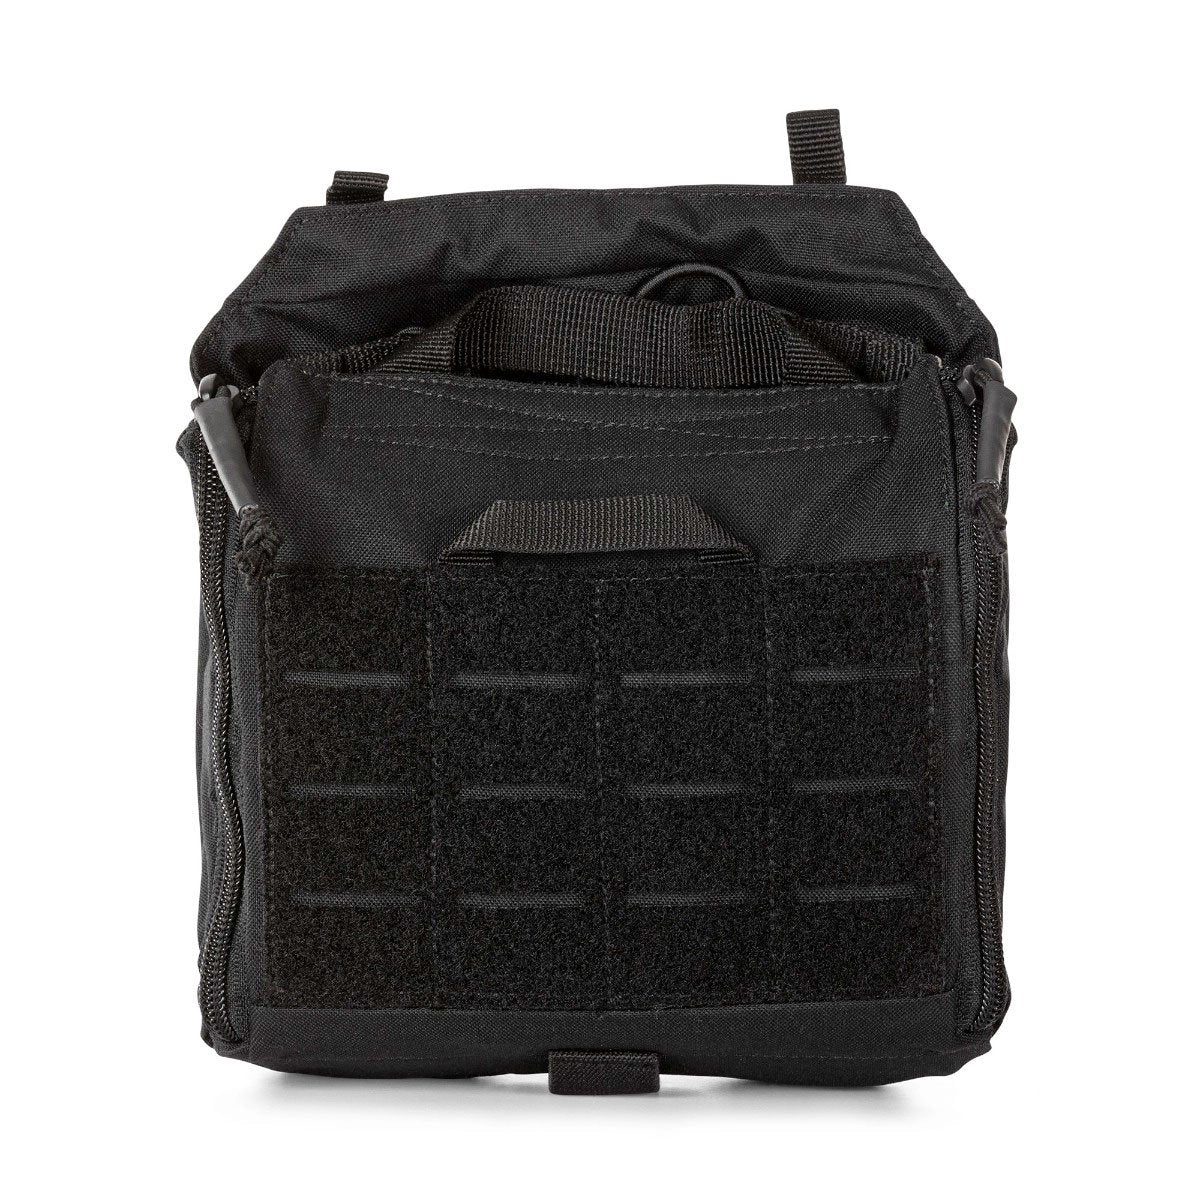 5.11 Tactical Flex TacMed Pouch Accessories 5.11 Tactical Black Tactical Gear Supplier Tactical Distributors Australia